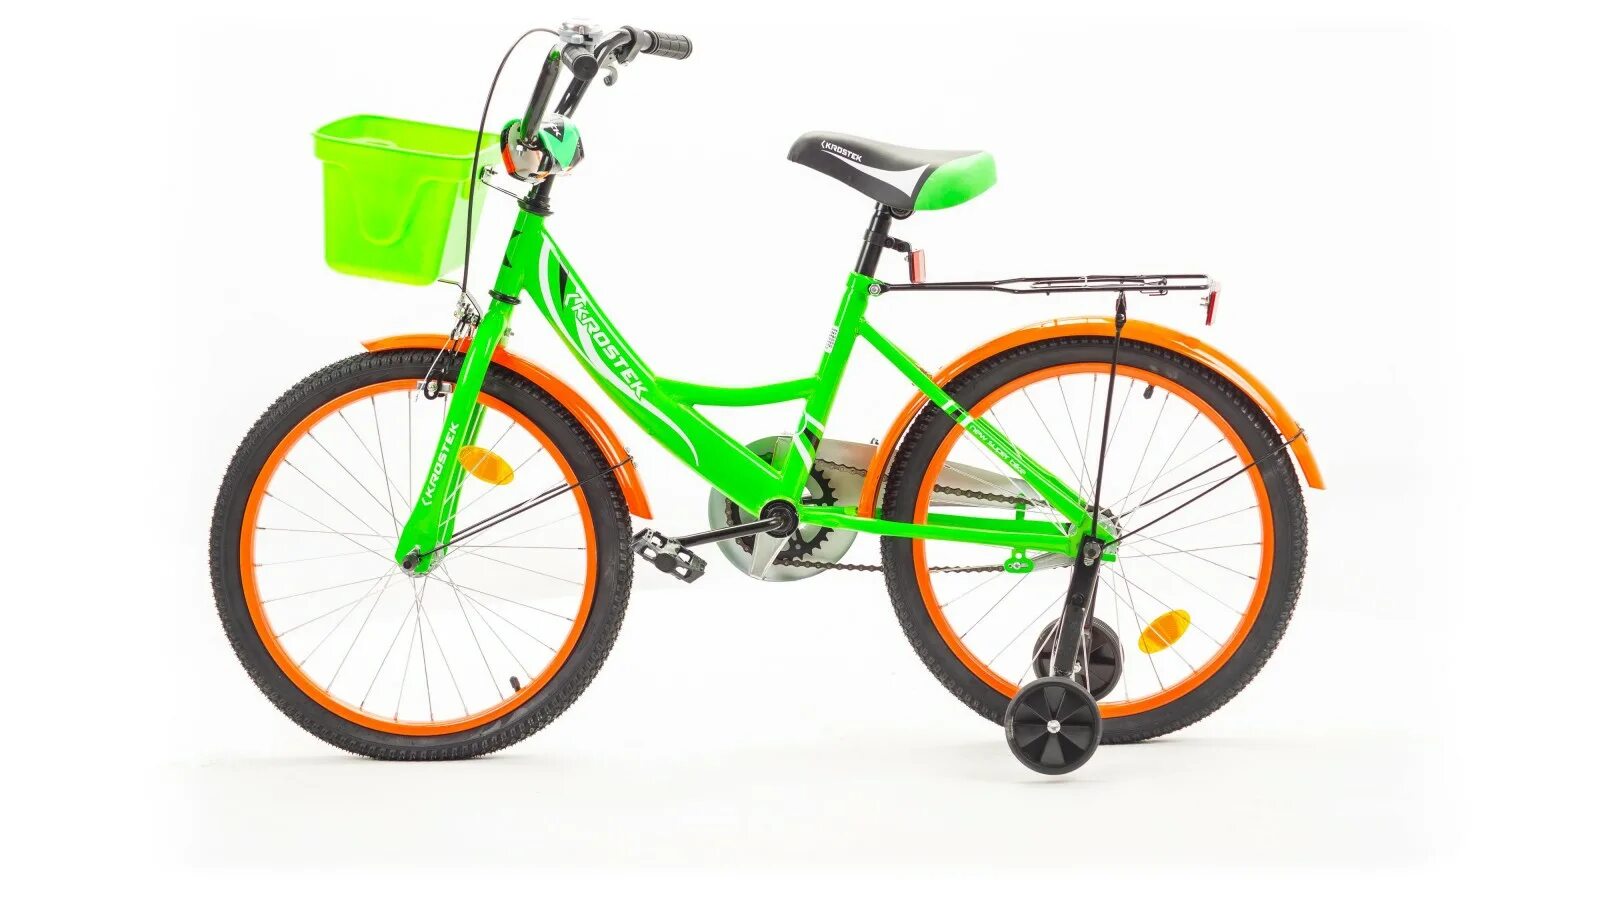 Велосипед KROSTEK Rocky 710. Велосипед фараон 20 зеленый. Велосипед 20" KROSTEK Wake (желтый), шт. KROSTEK Wake 12. Велосипед подростковый купить в спб